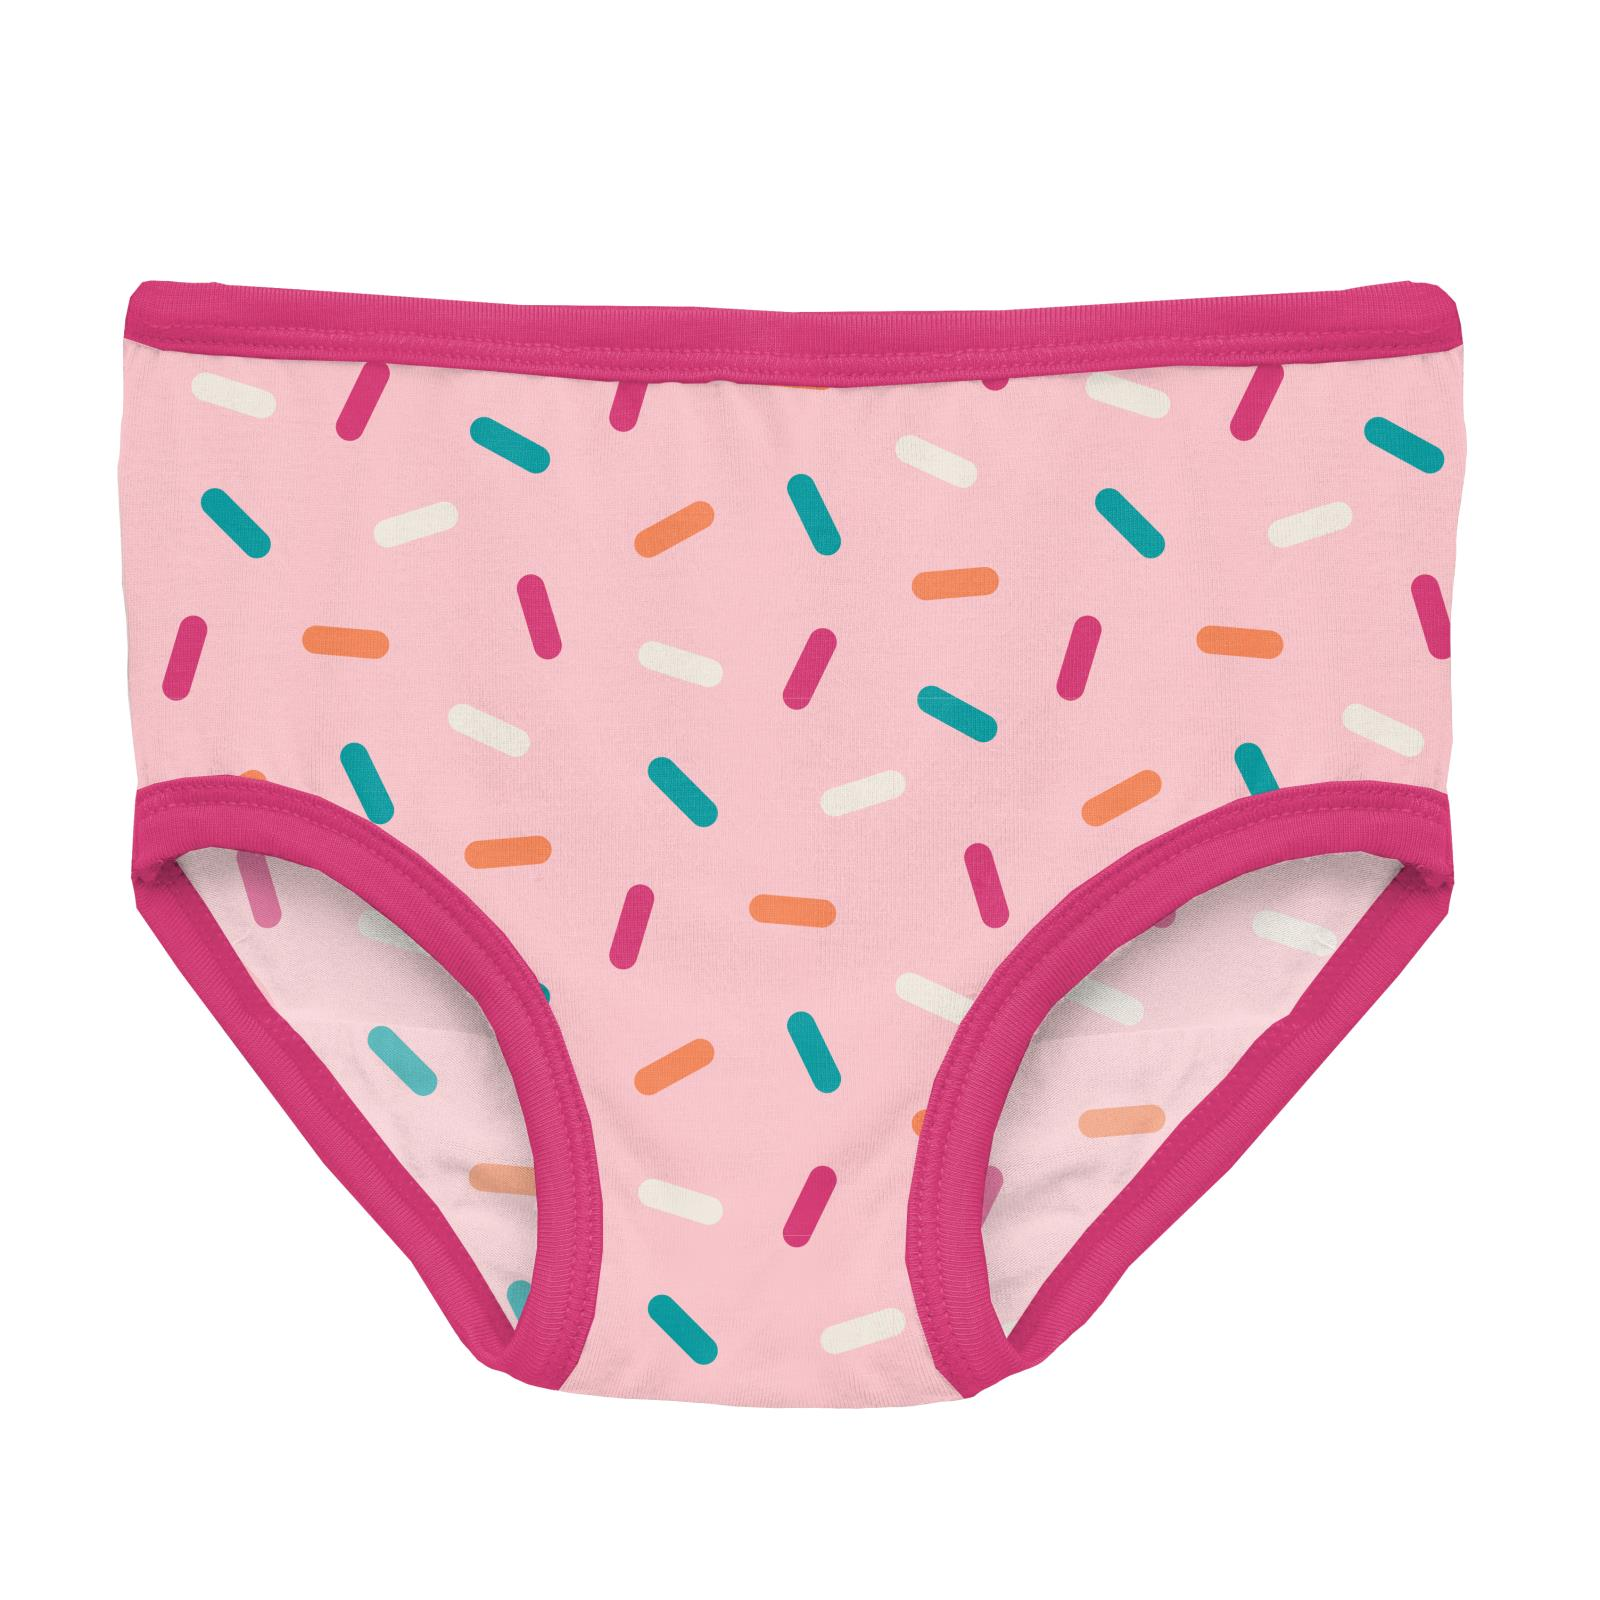 Kickee Pants Lotus Sprinkles Print Girl's Underwear